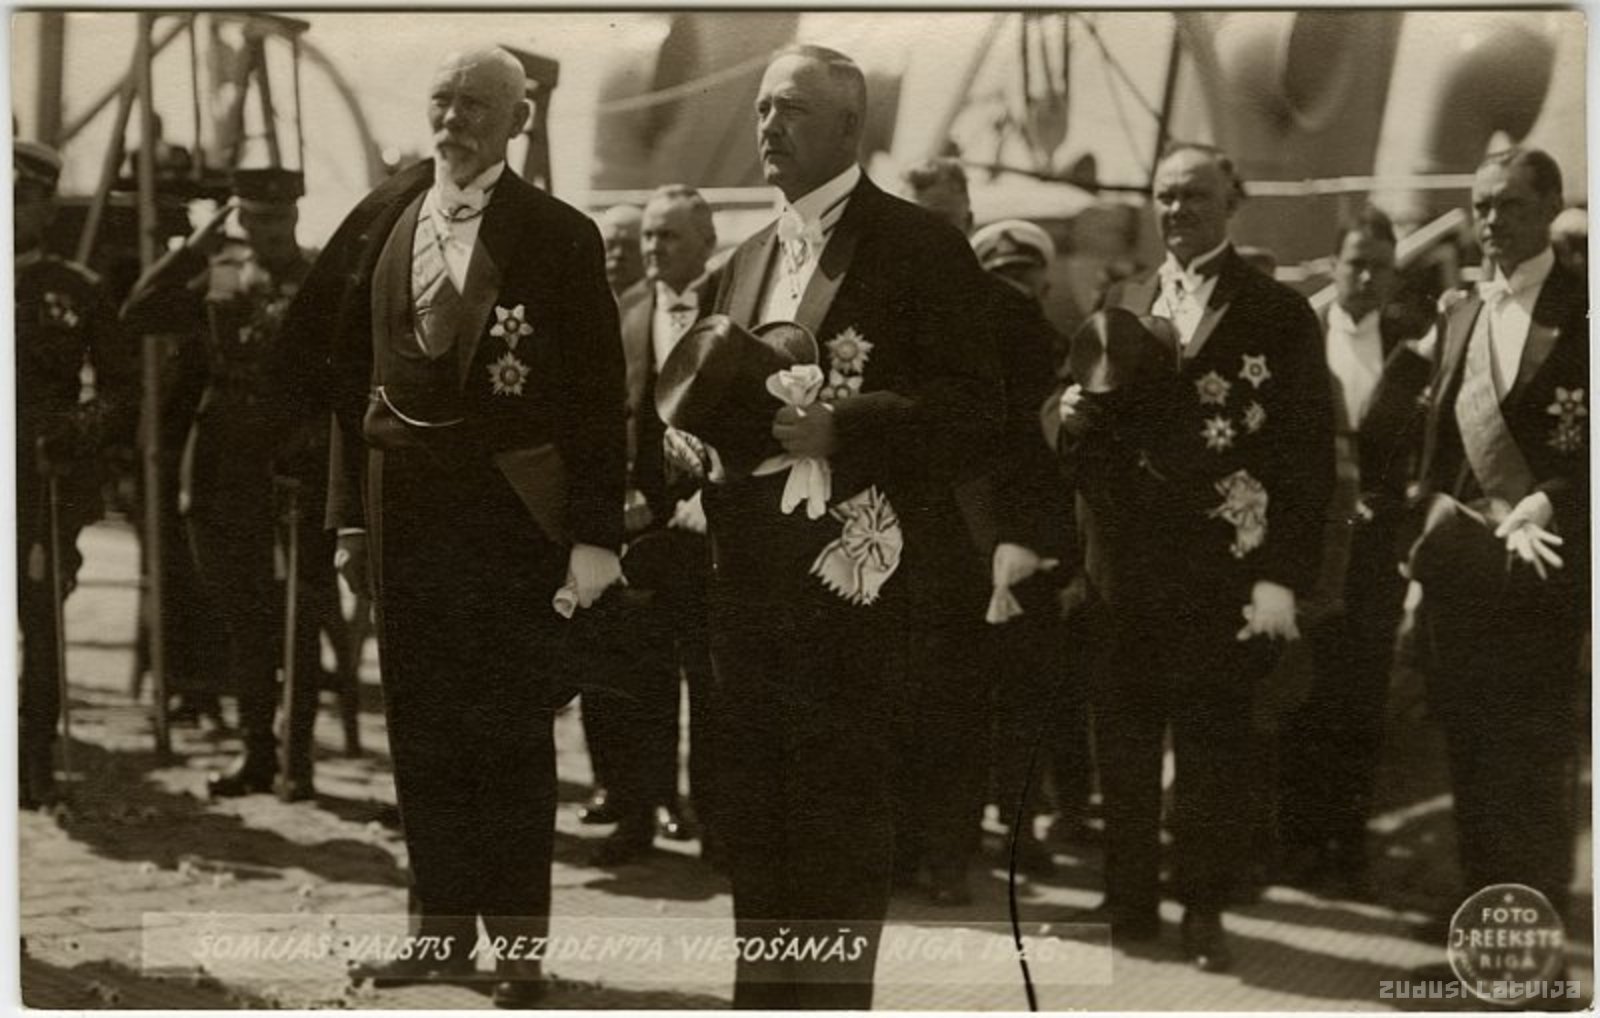 President of Finland L. Relanders in Riga in 1926